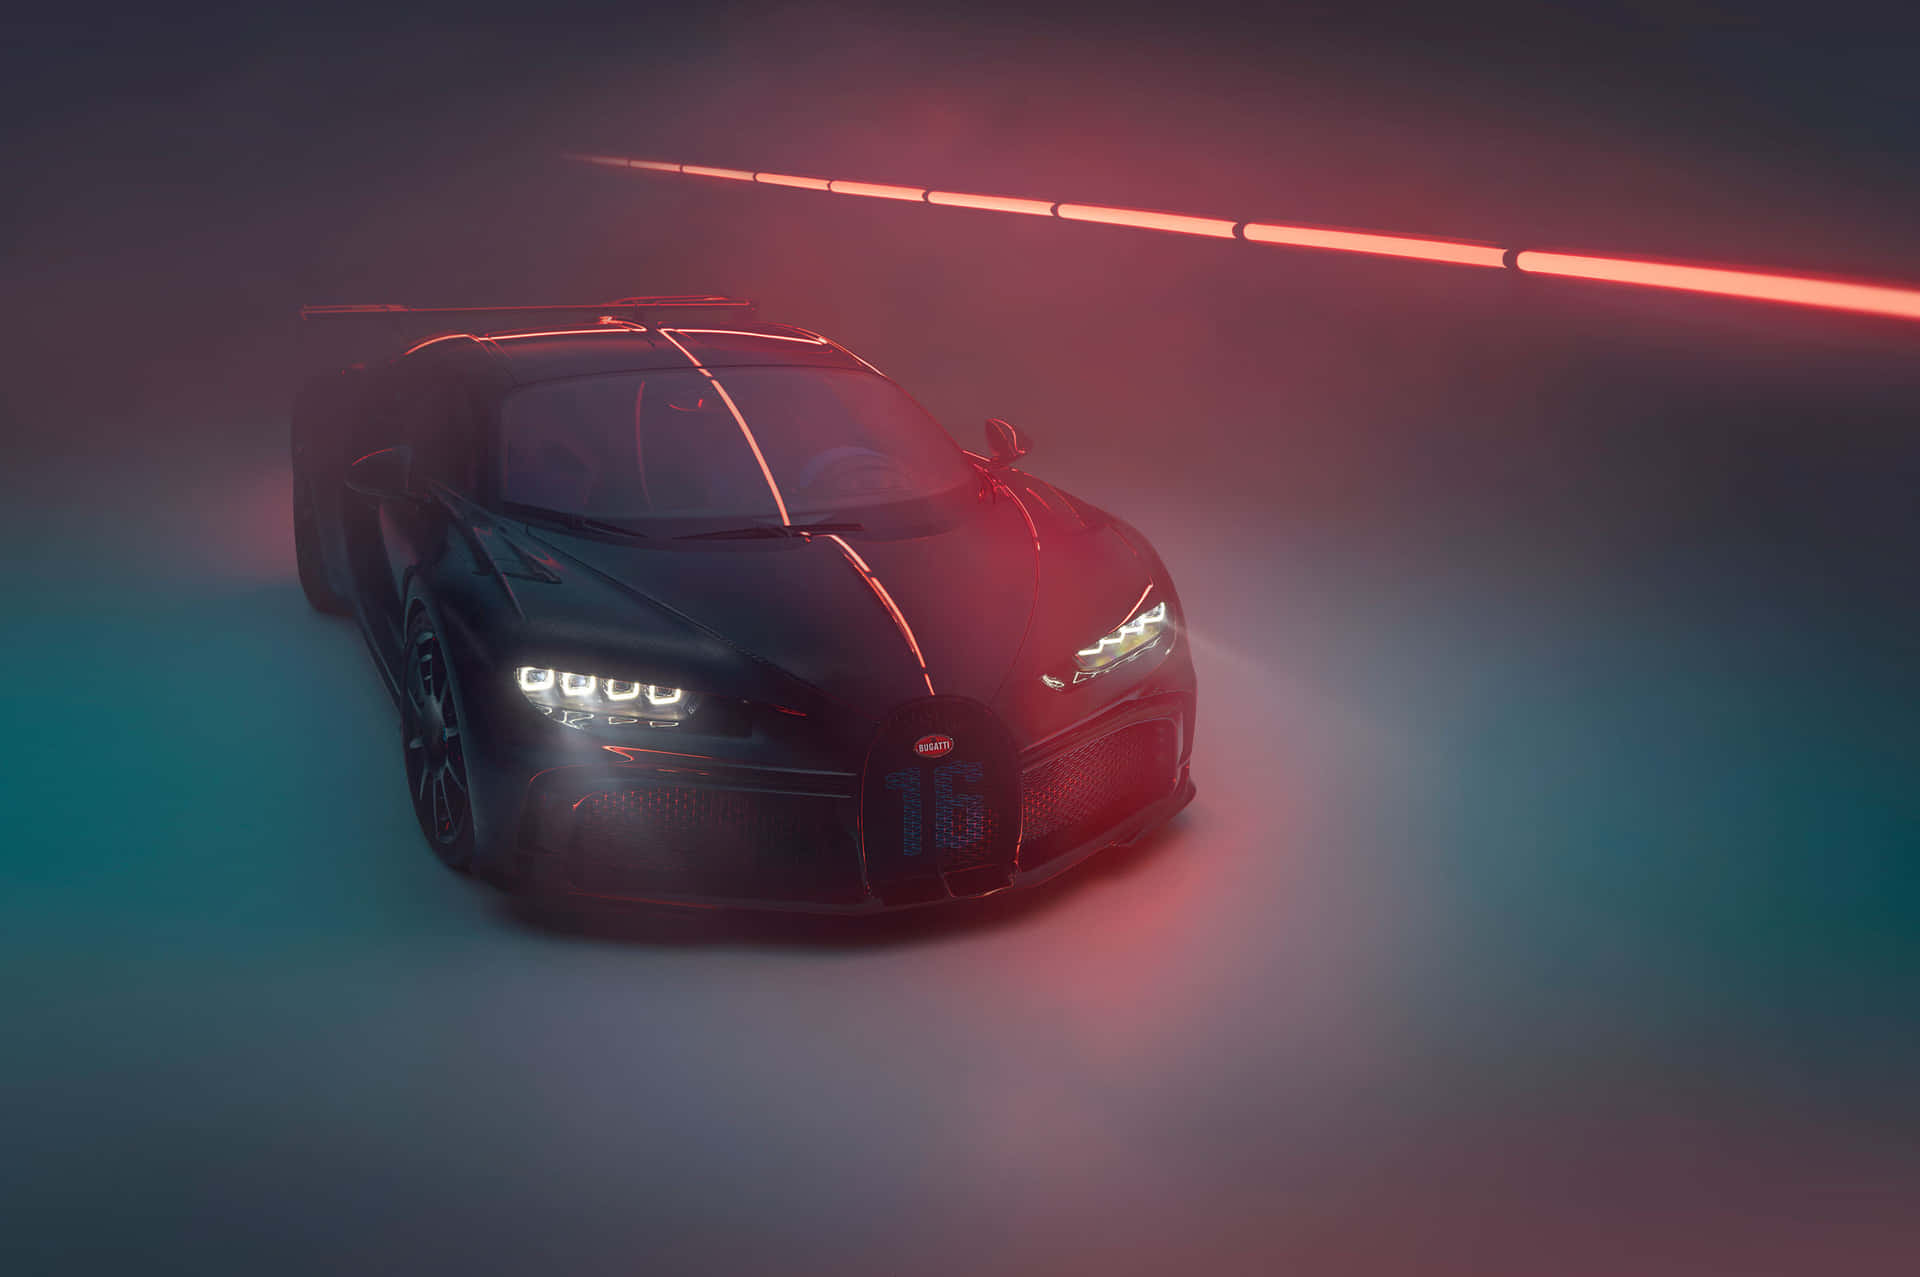 Feel the rush with the Neon Bugatti Wallpaper